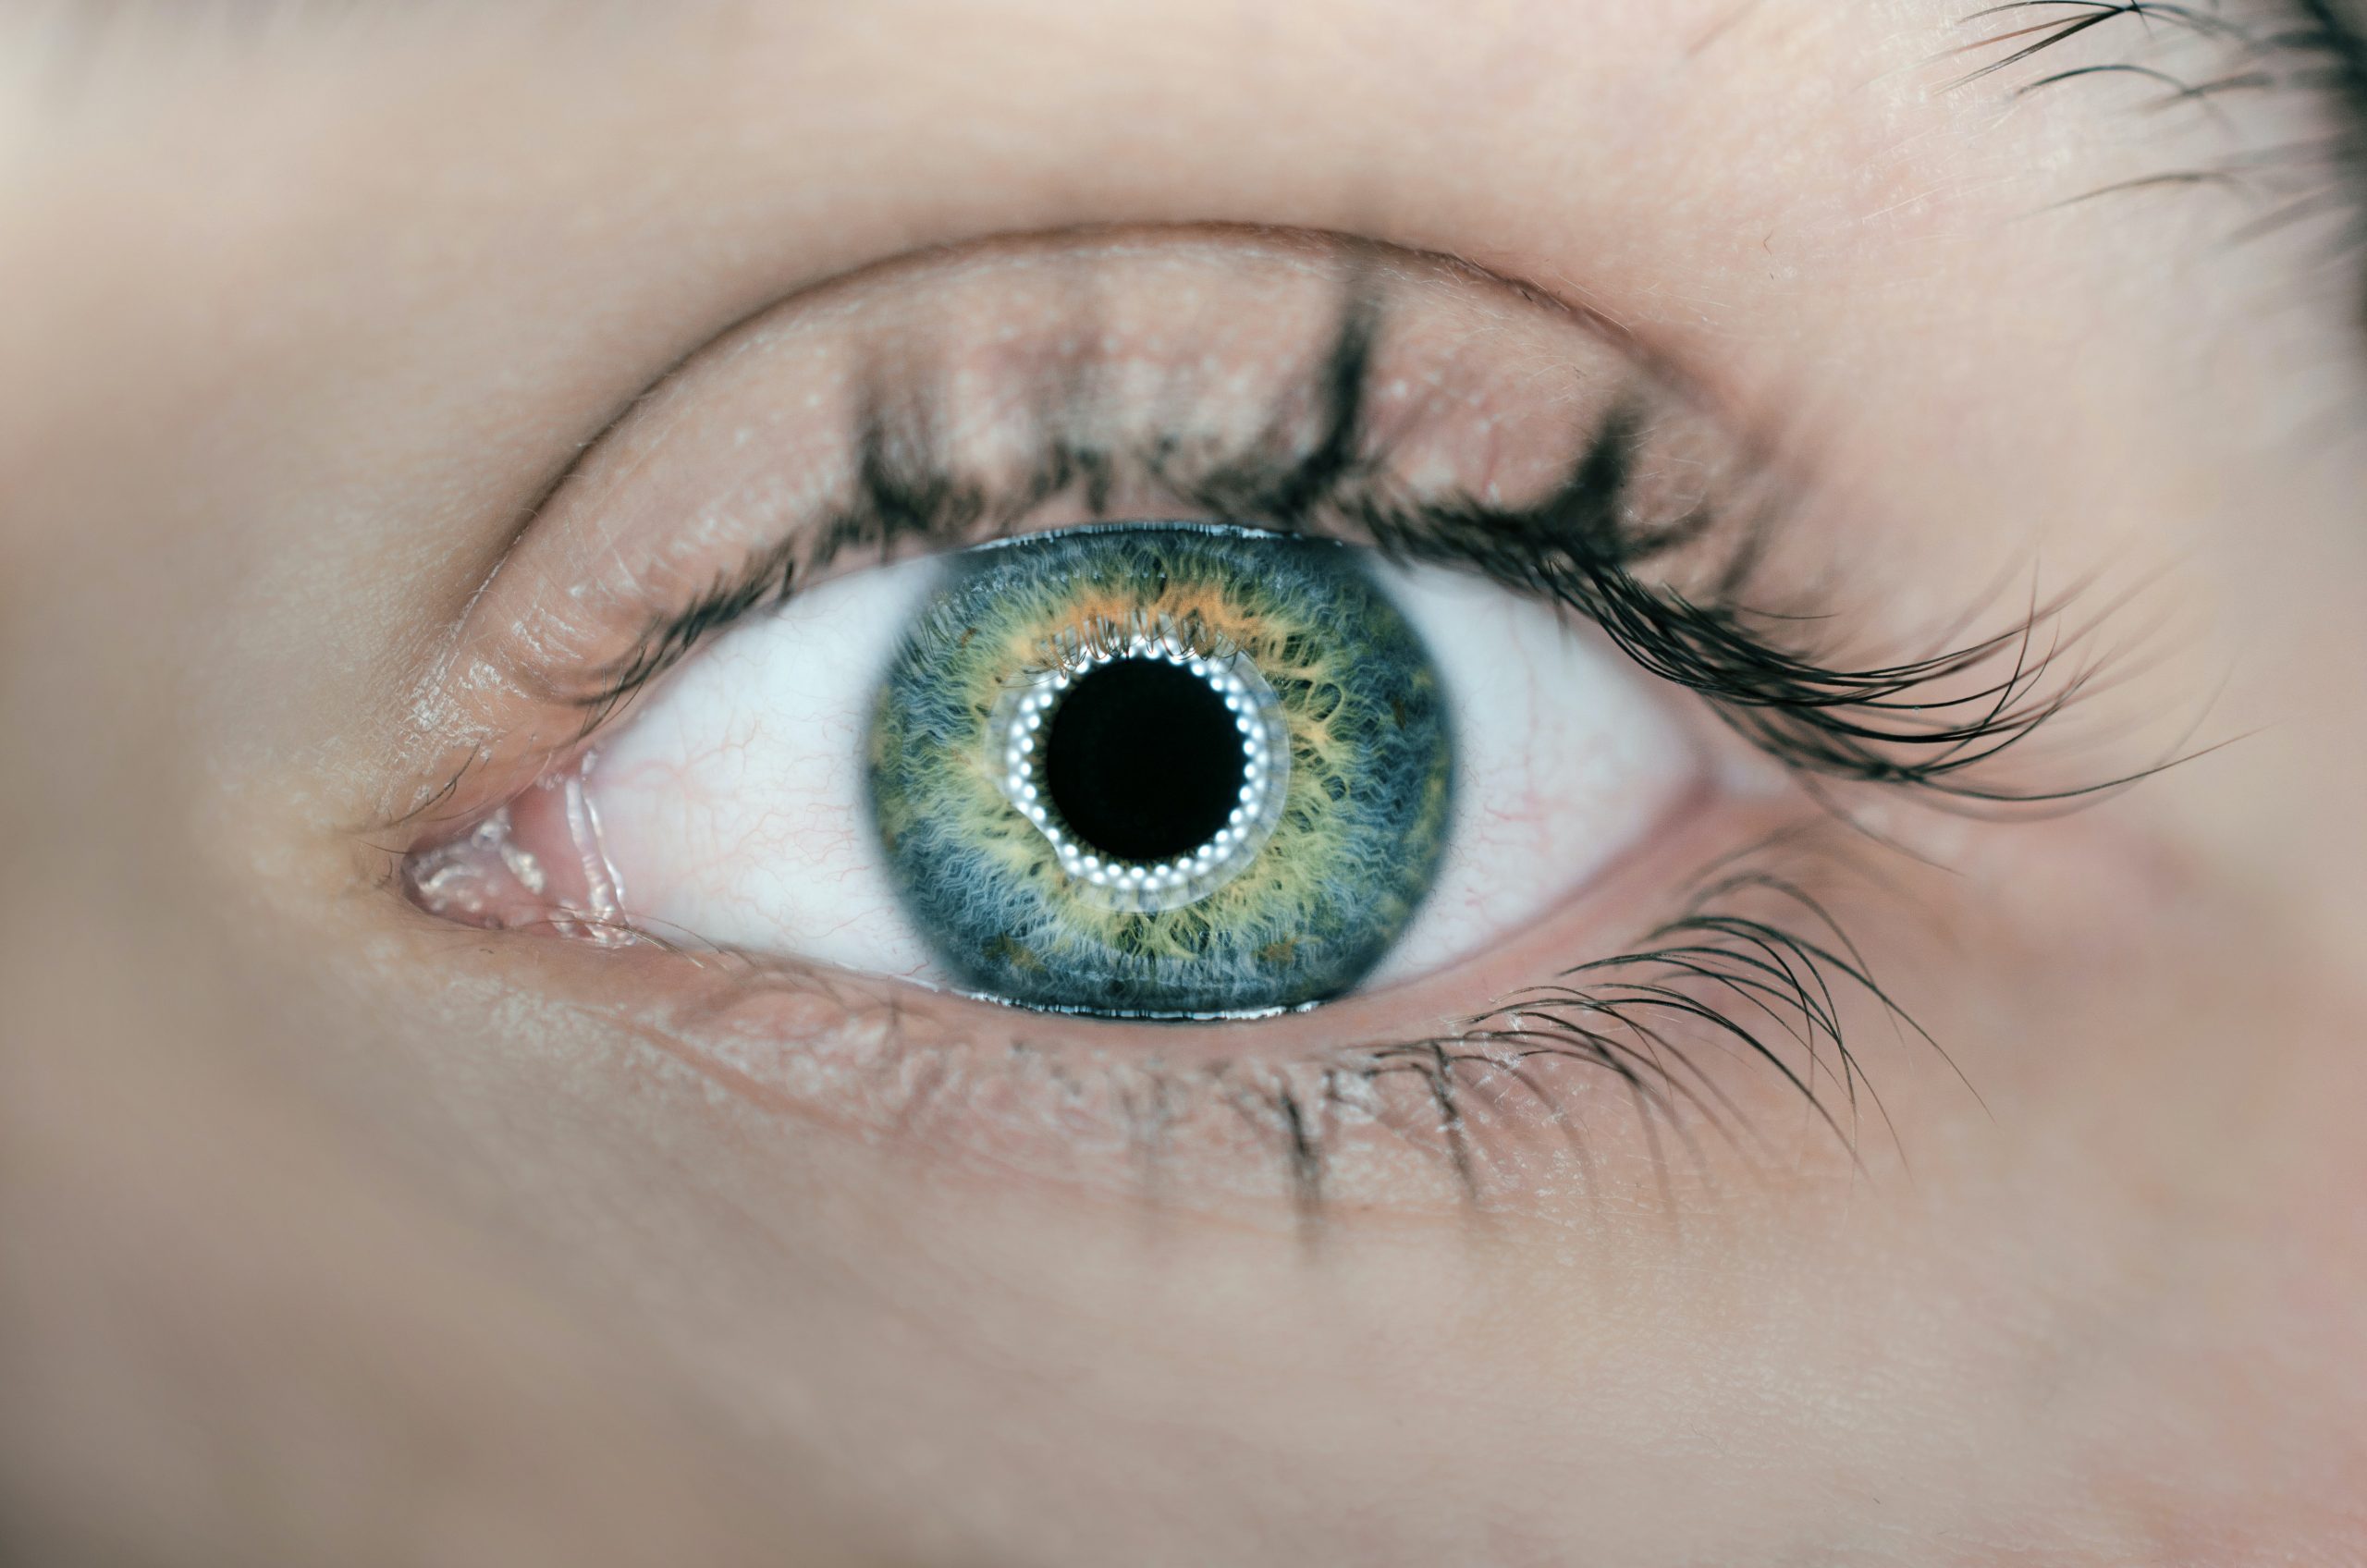 dettaglio occhio artificiale